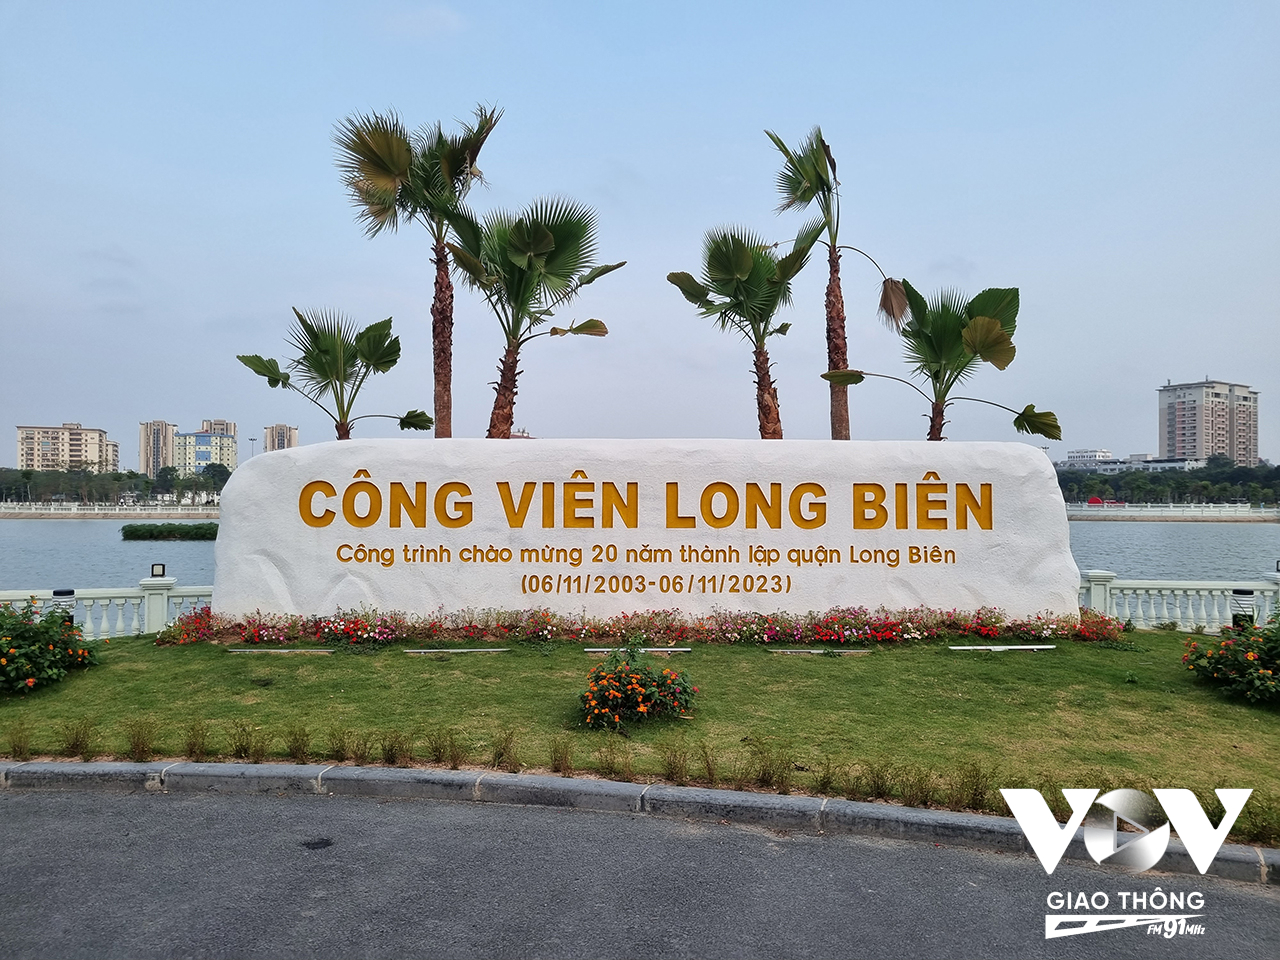 Mùa xuân về sớm trên công viên Long Biên, đúng dịp kỷ niệm 20 năm ngày thành lập quận, tháng 11/2023. Ảnh: Minh Hiếu